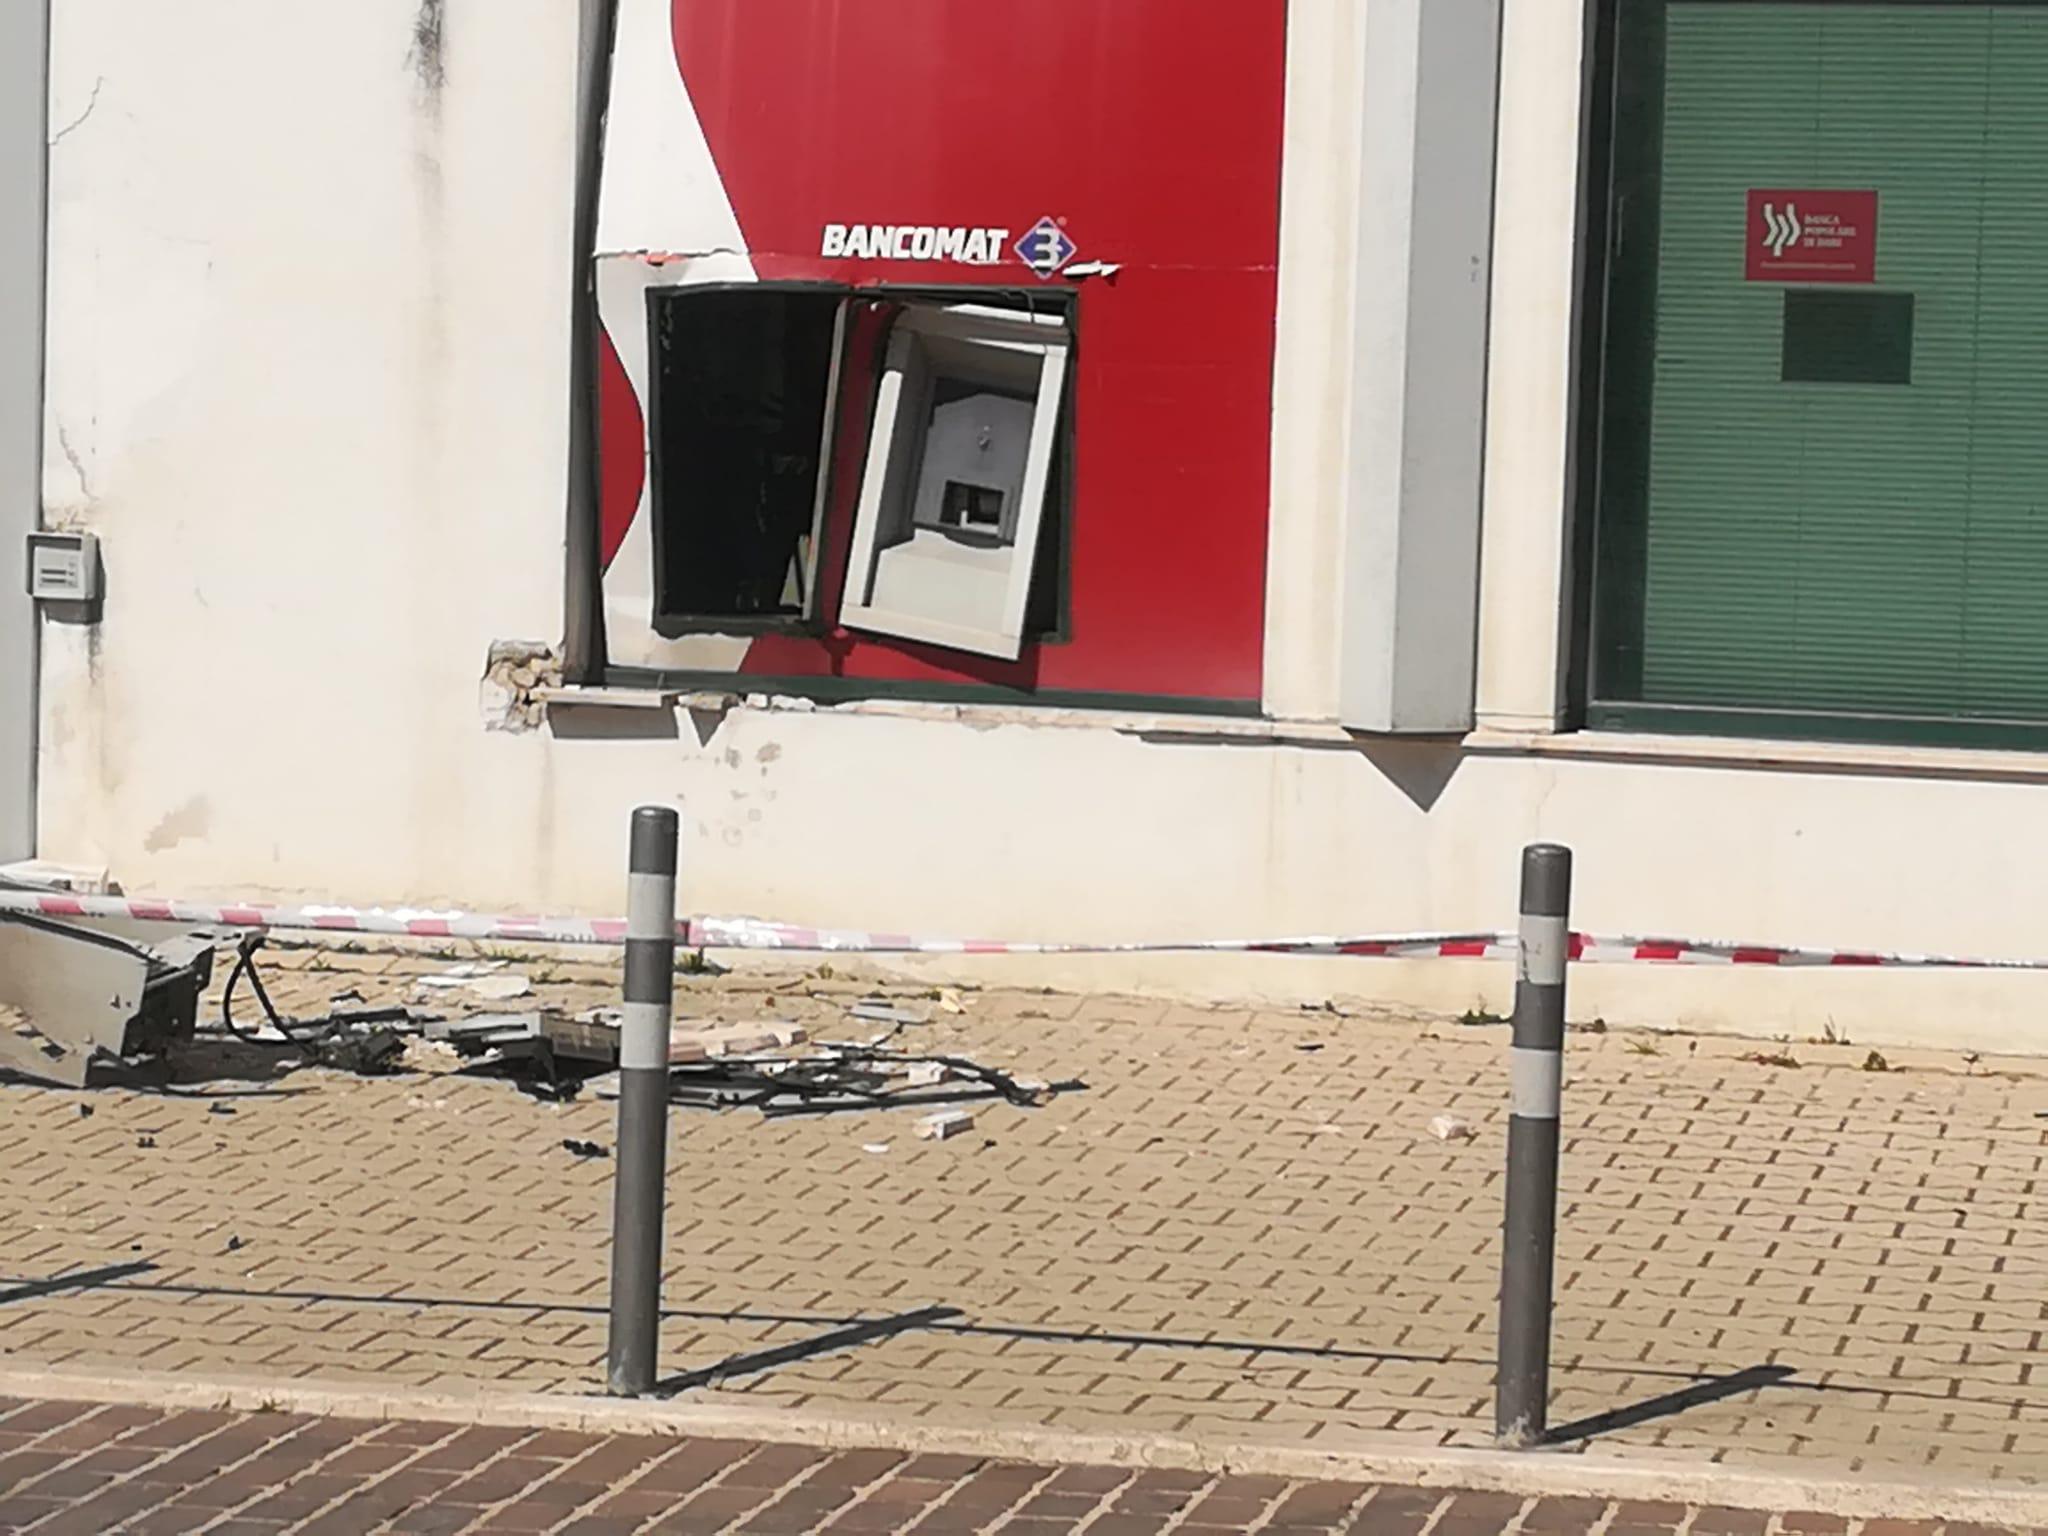 Esplosione al bancomat, ma i malviventi fuggono via senza bottino